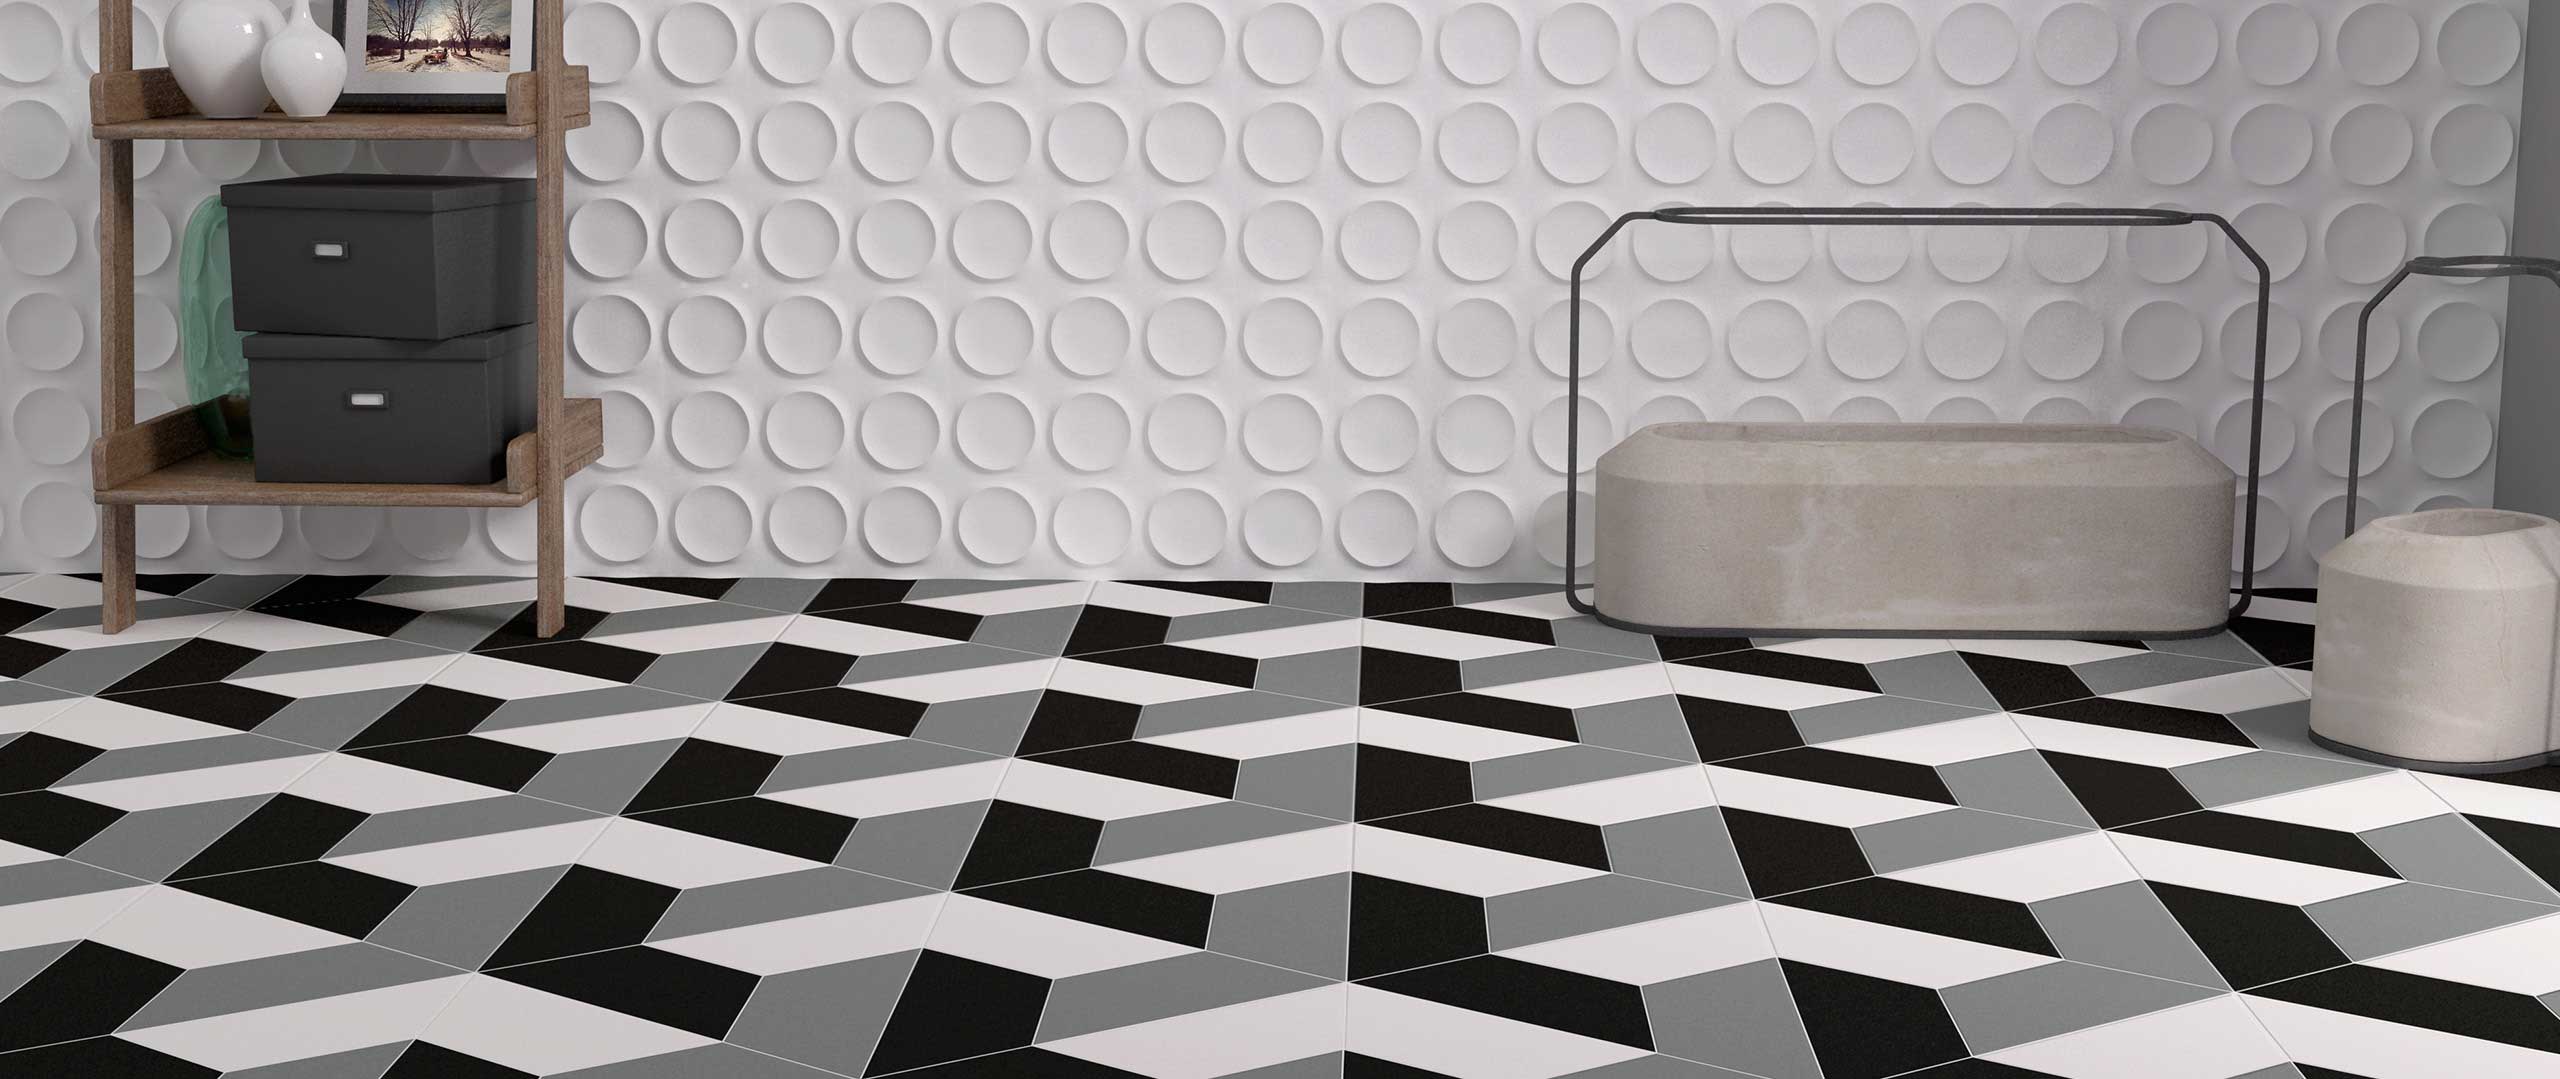 Ceramic Tile Flooring